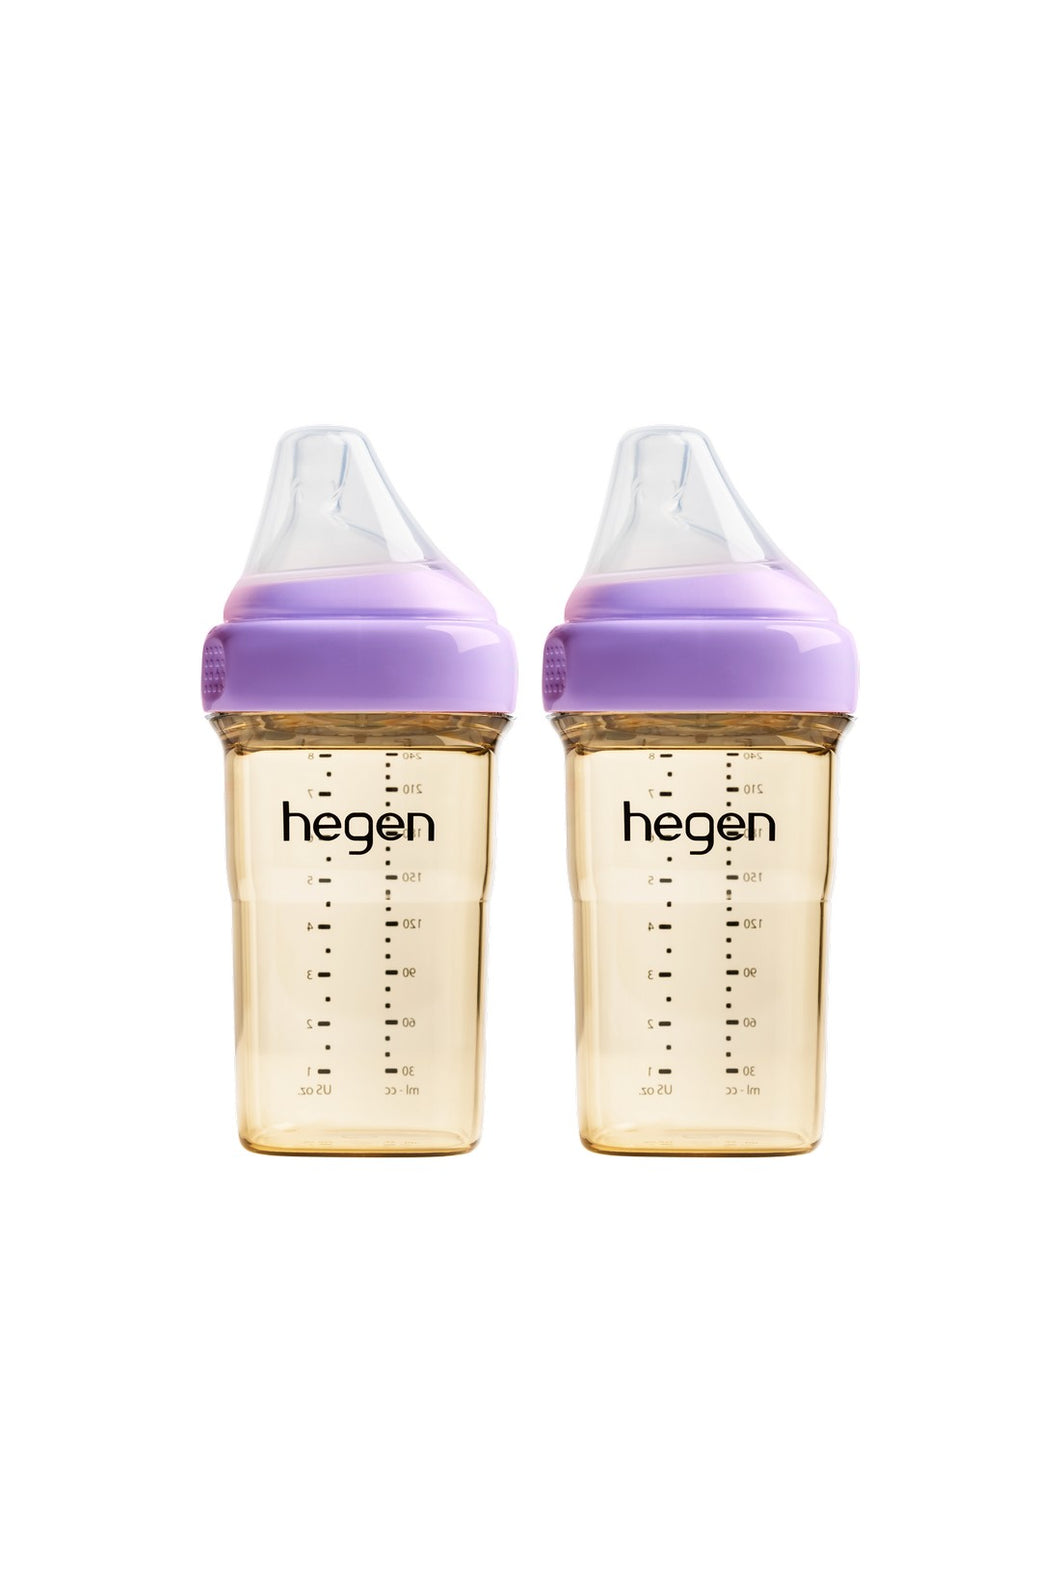 Hegen Pcto™ 240ml/8oz Feeding Bottle PPSU, 2 pack - Purple 1